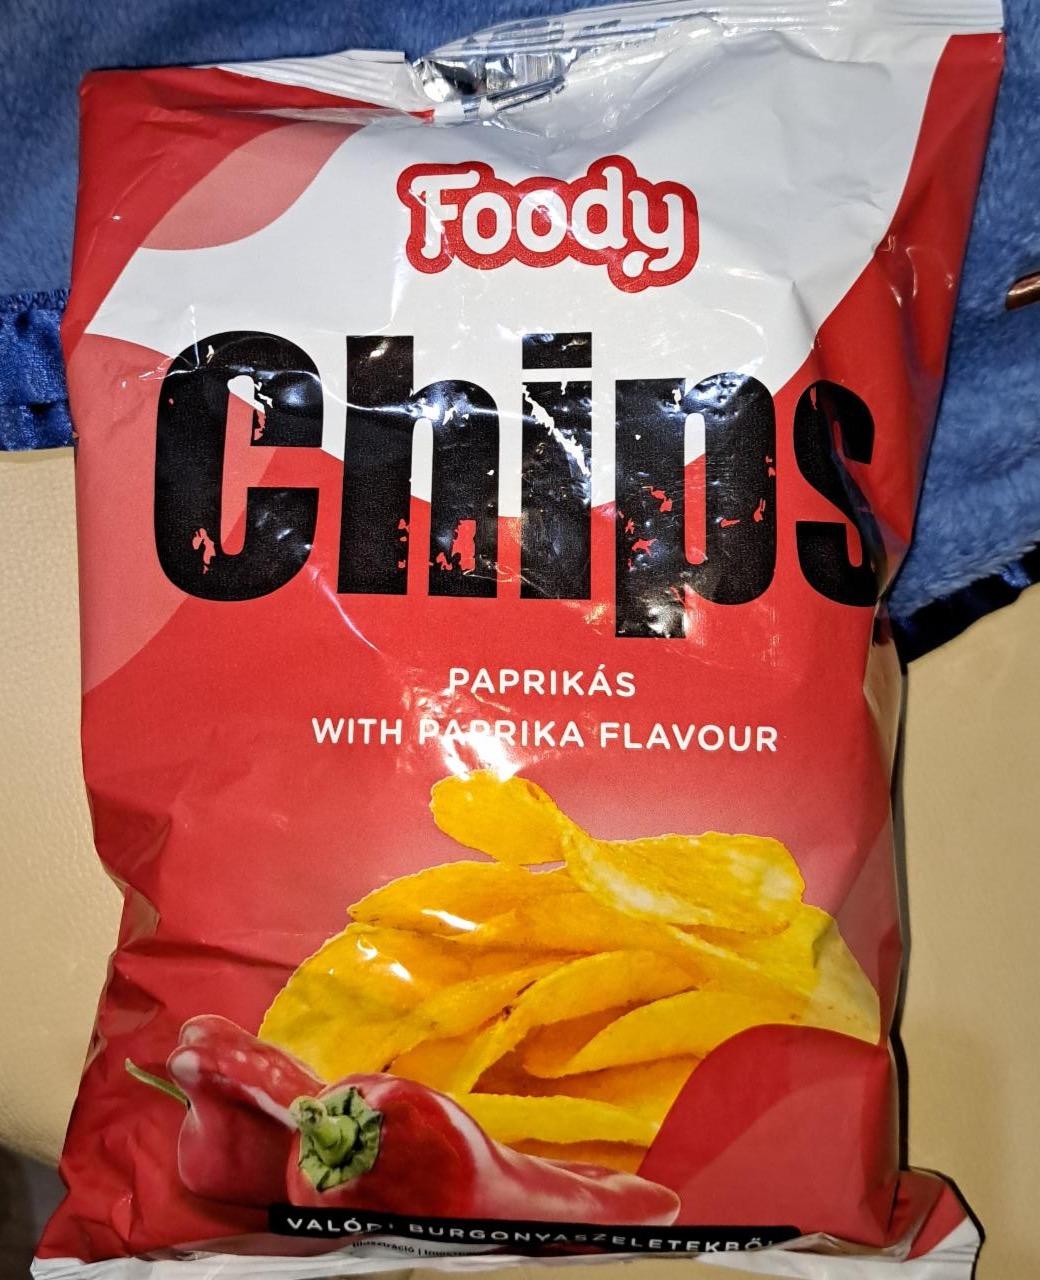 Képek - Chips paprikás Foody